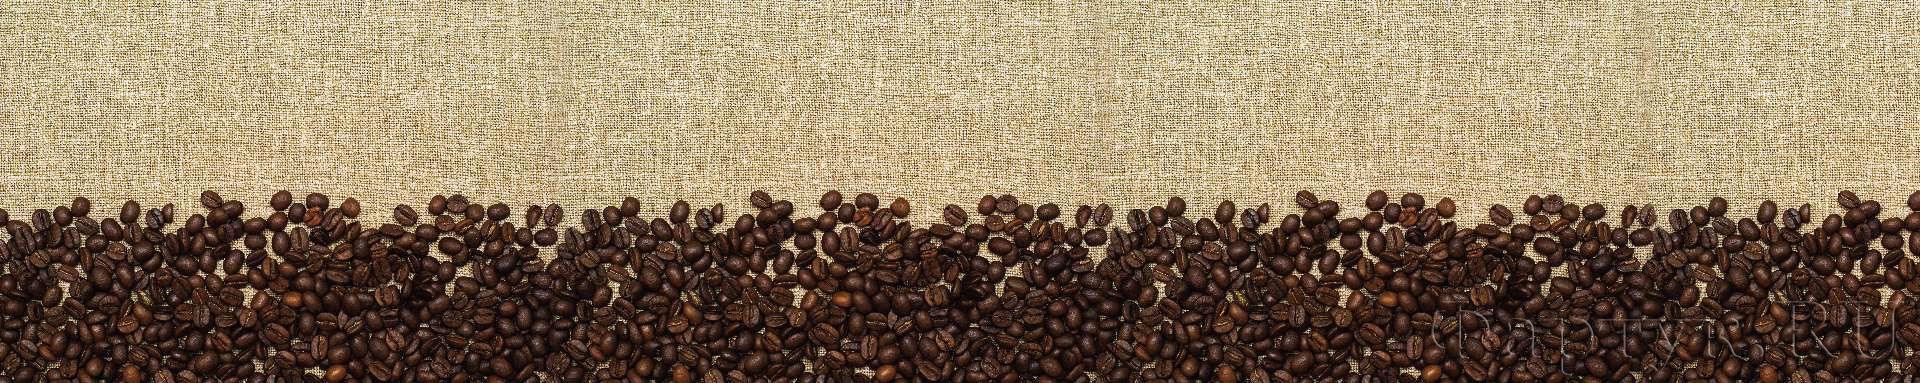 Кофейные зерна на мешковине